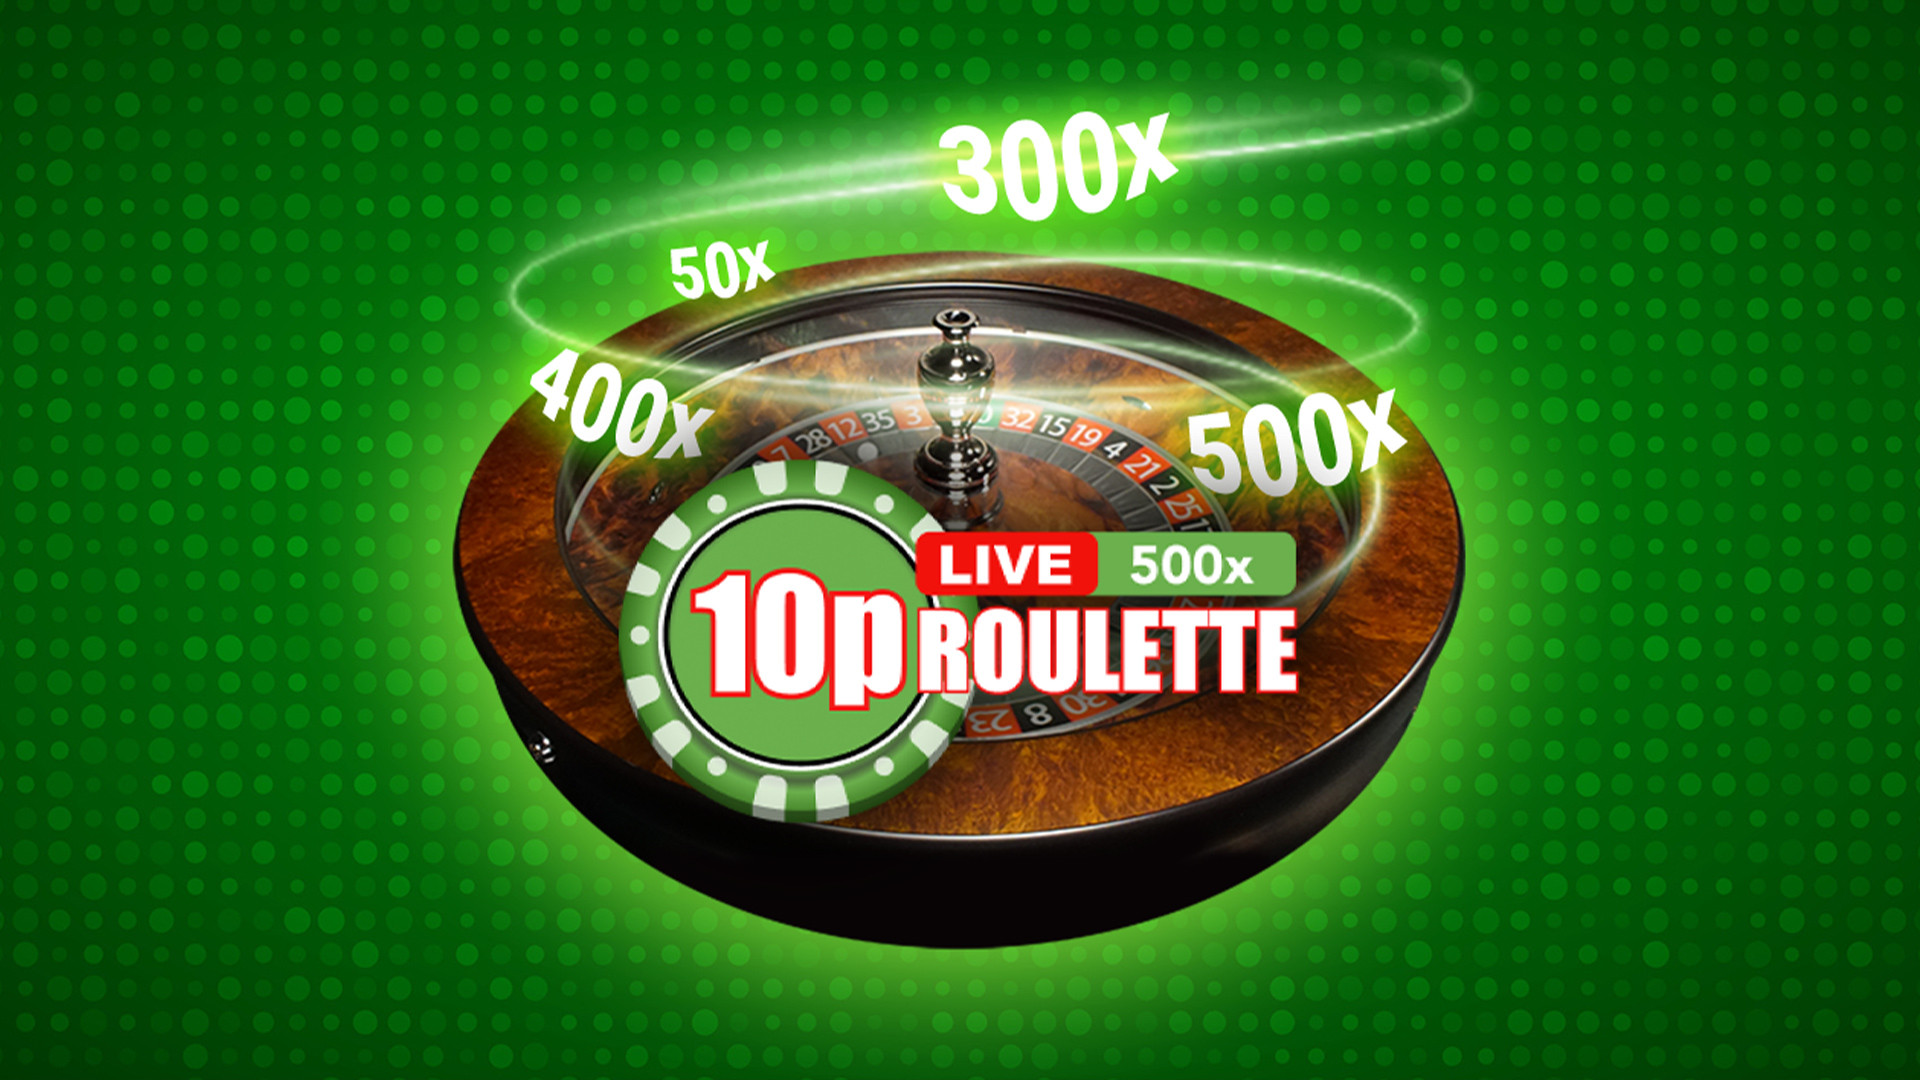 10p Roulette 500x Live